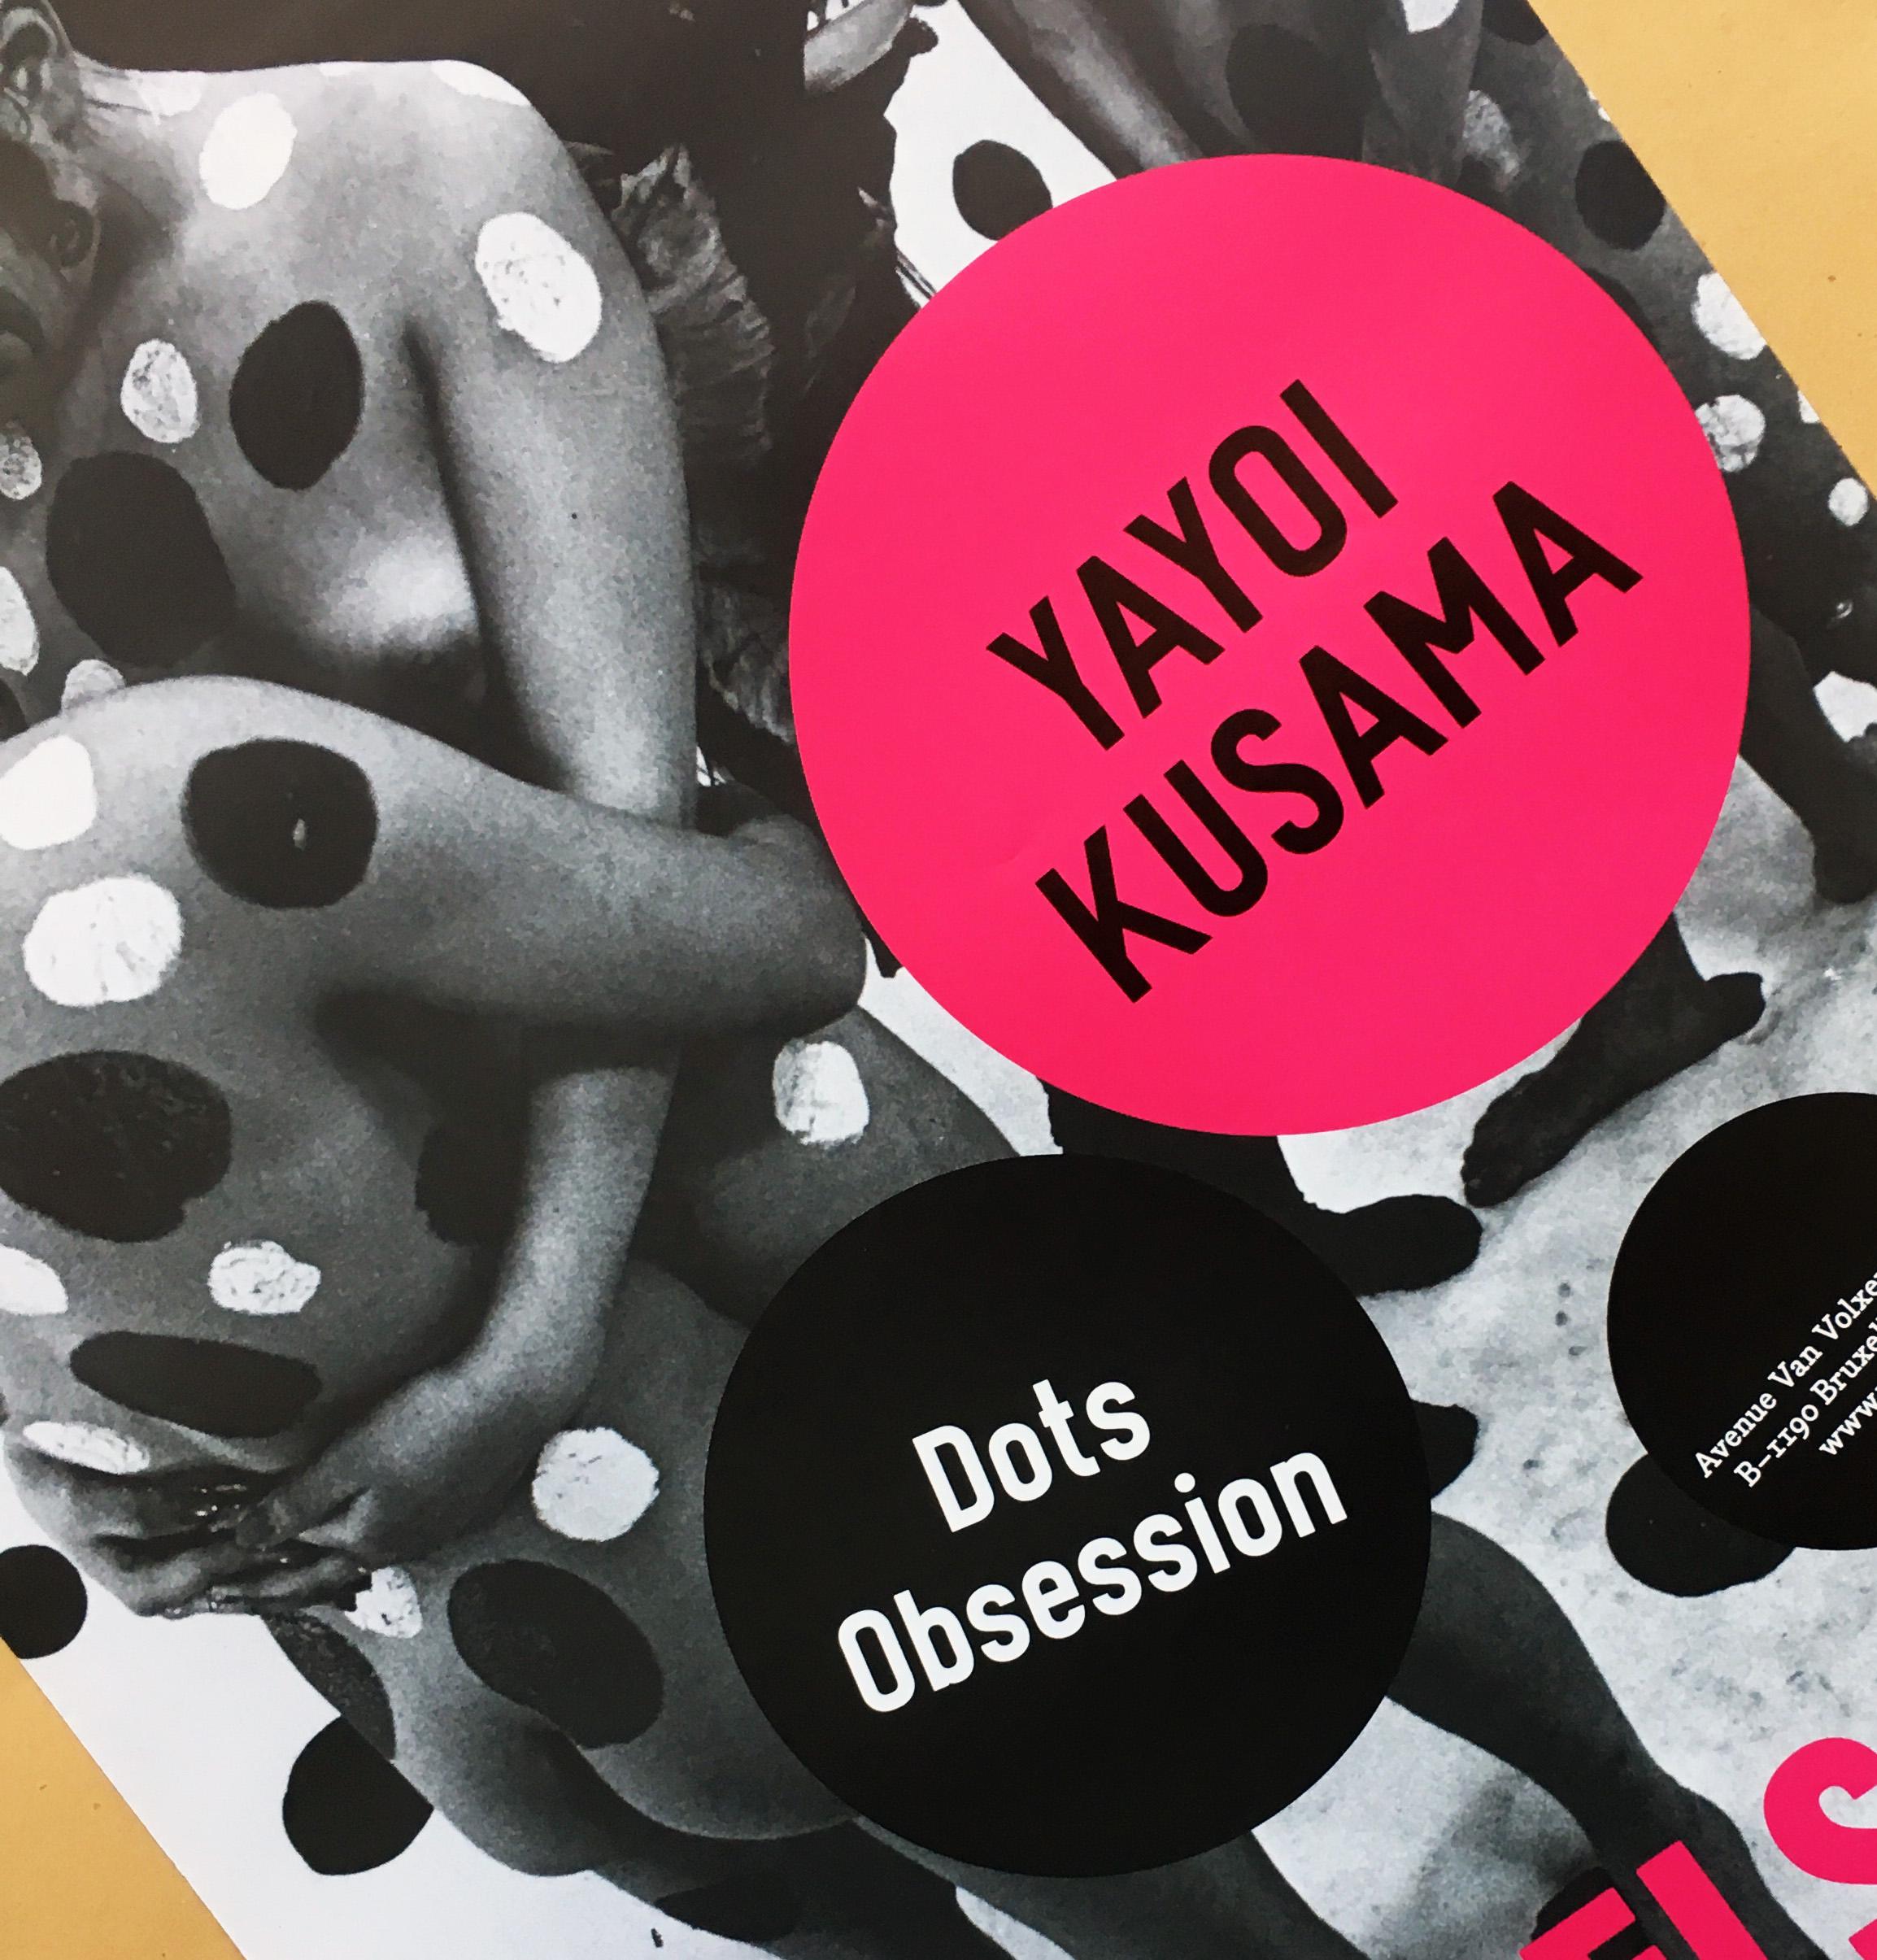 Yayoi Kusama exhibition poster (Kusama Dots Obsession) - Pop Art Photograph by After Yayoi Kusama